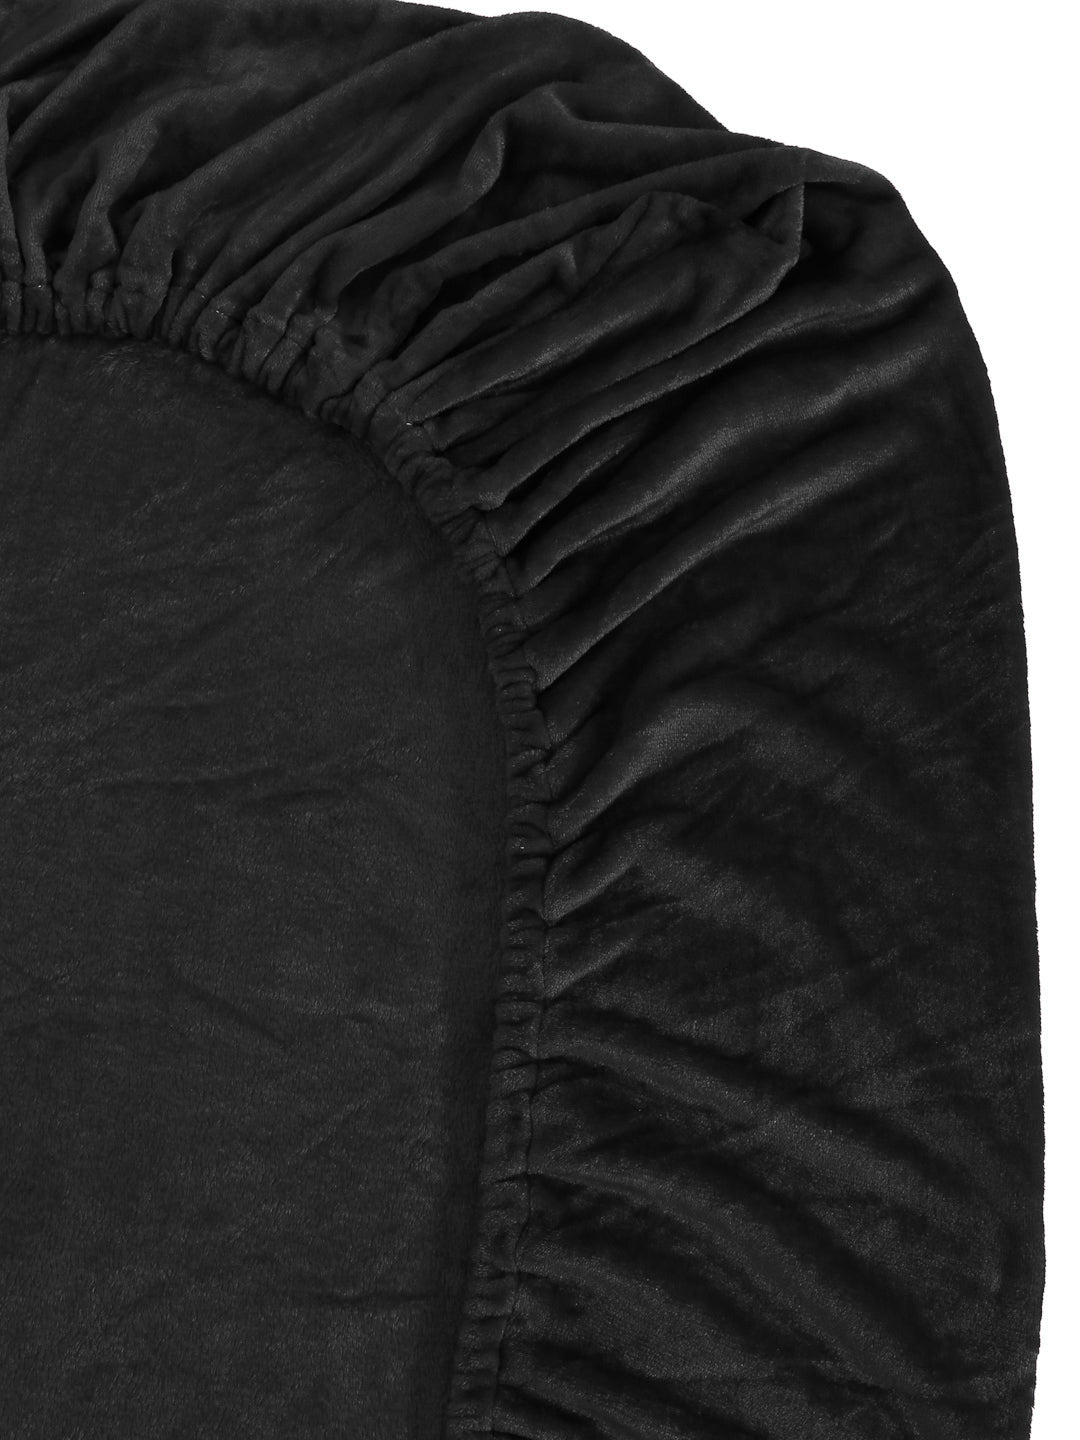 Klotthe Black Solid Woolen Mild Winter Double King Bedding Set